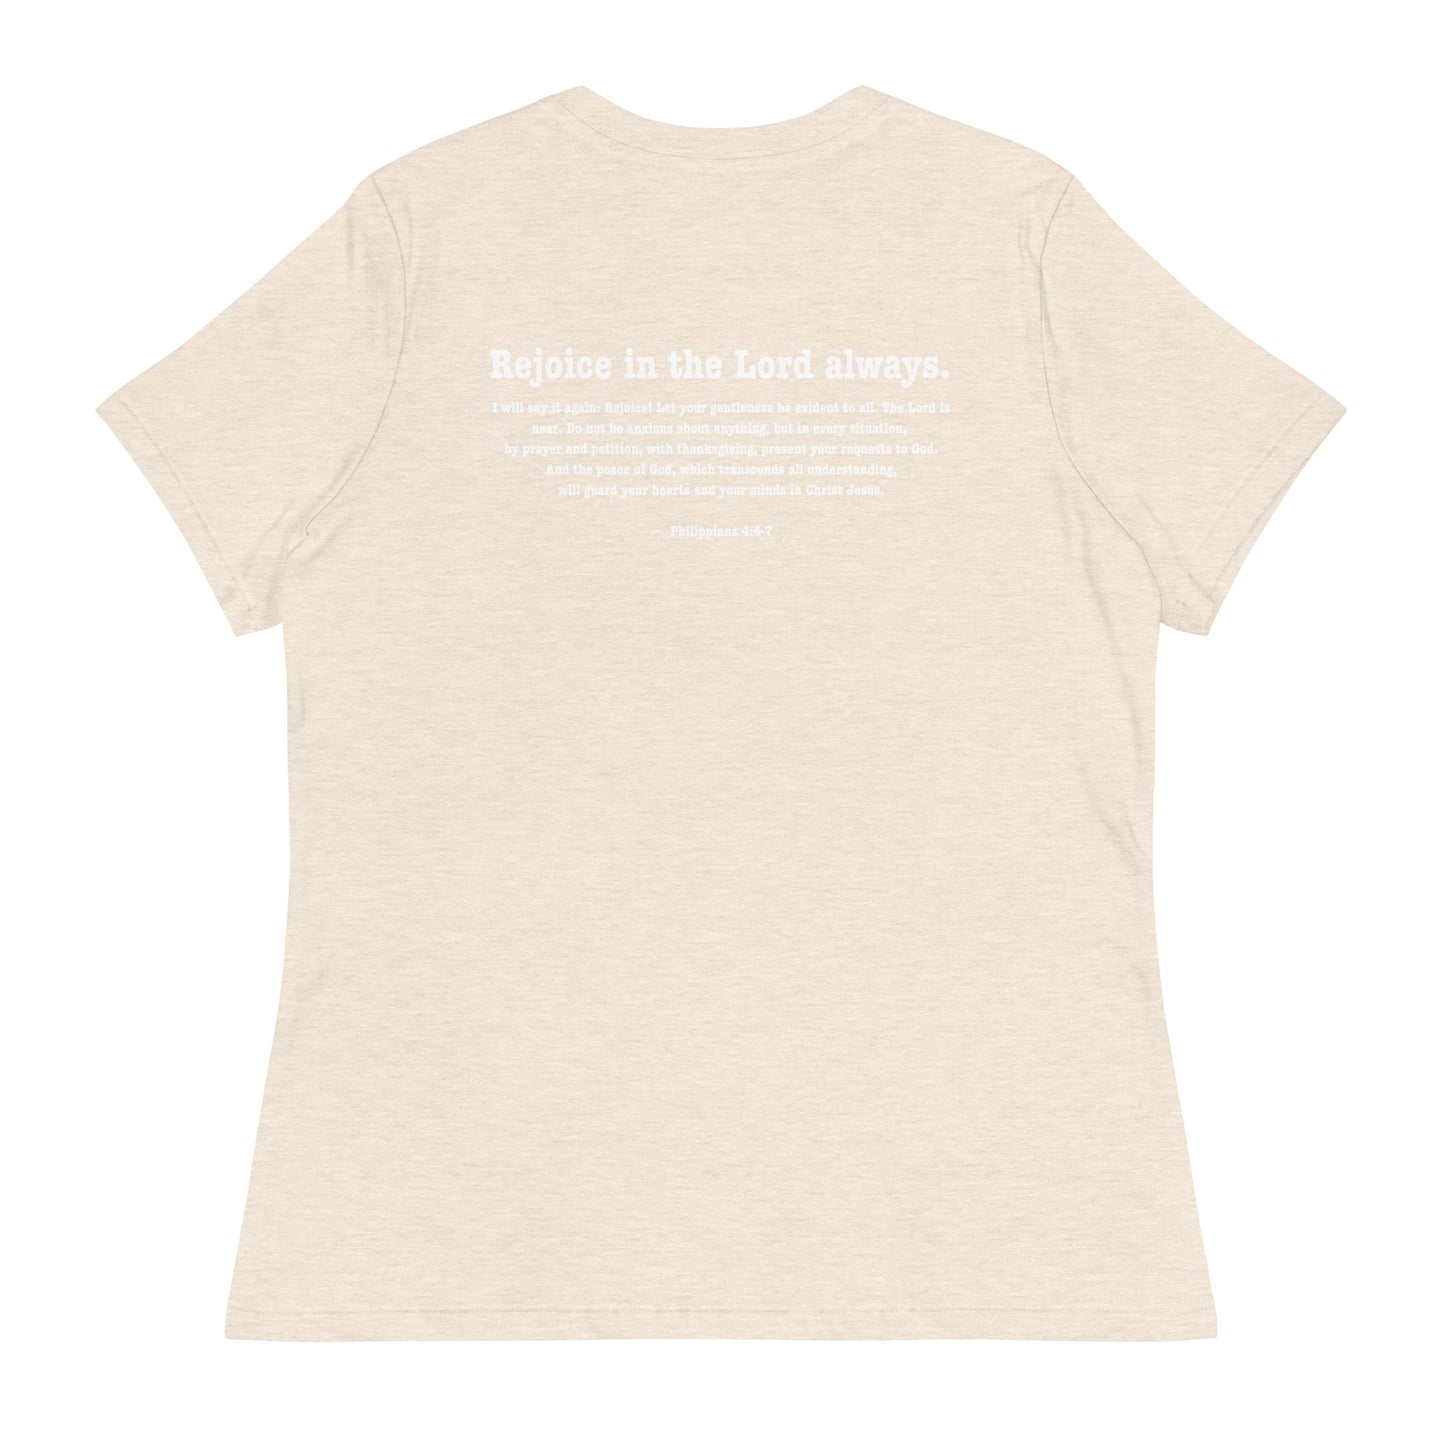 Grammy K fundraiser Women's Relaxed T-Shirt